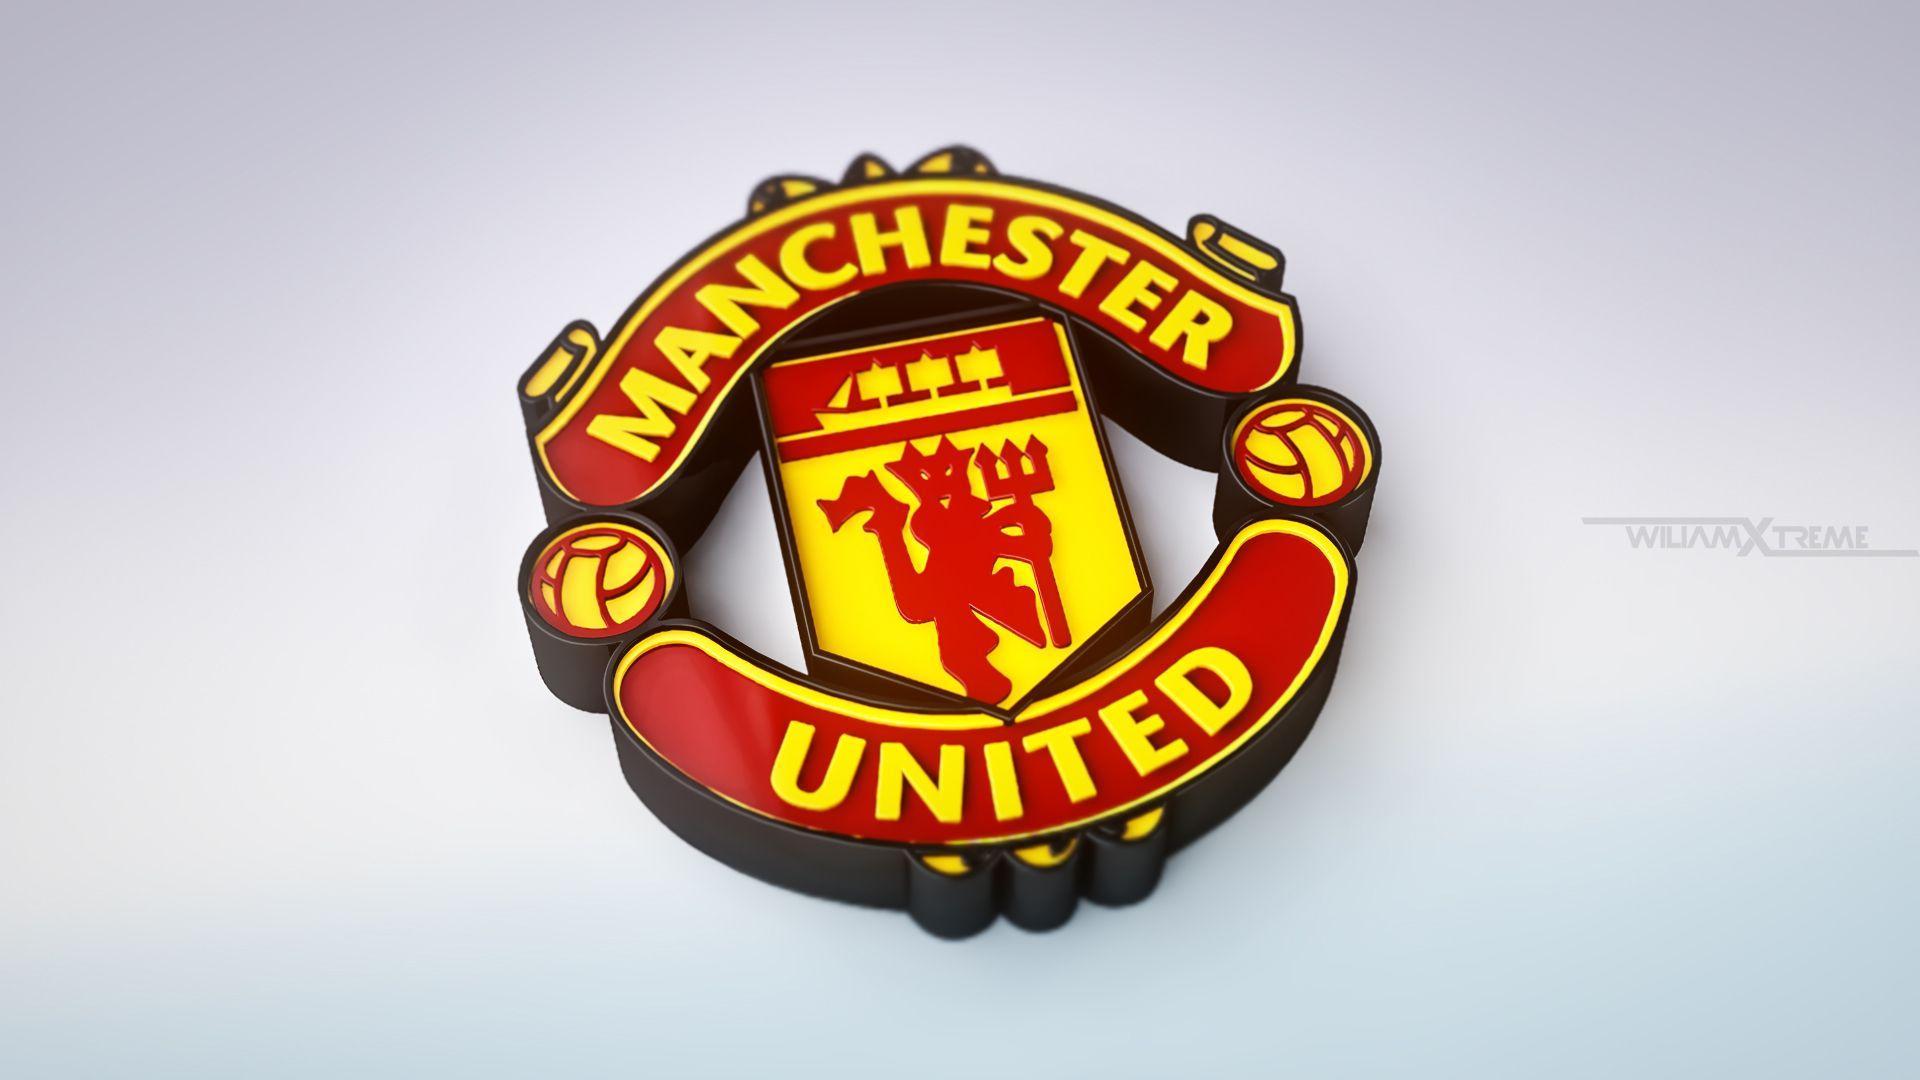 Manchester United Logo 3D Image Wallpaper For Desktop Background